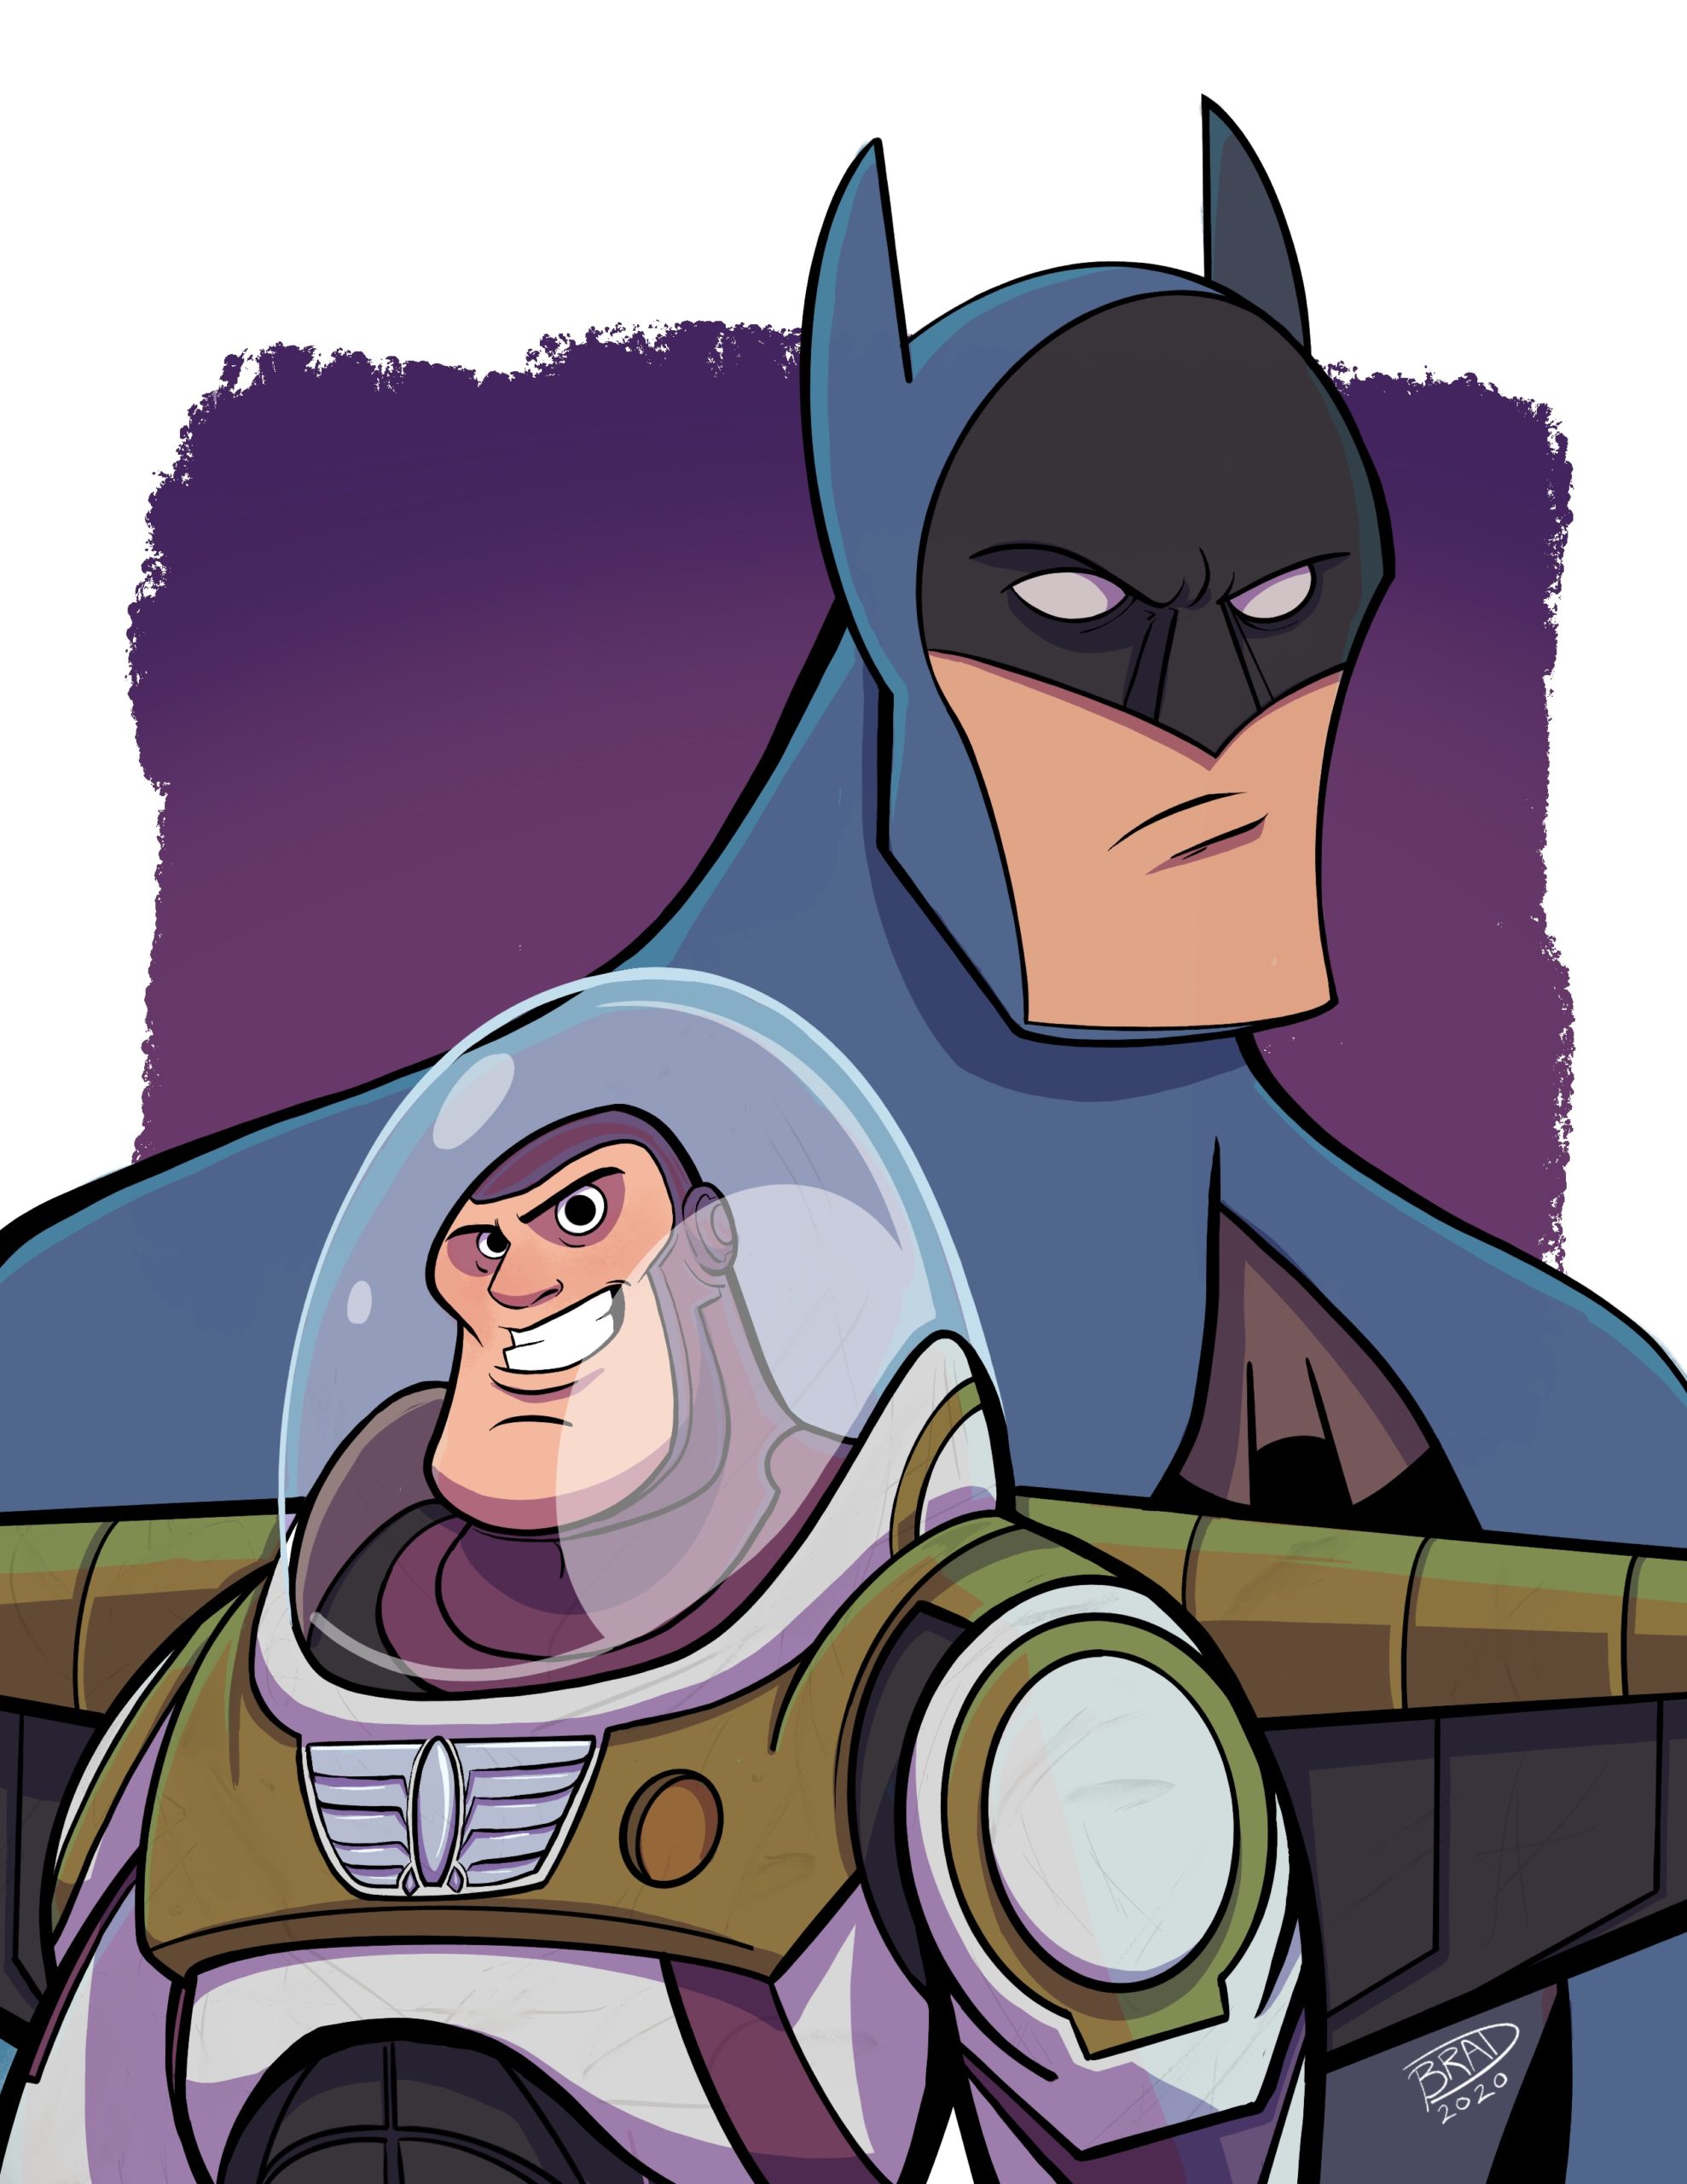 Batman and Buzz Lightyear drawn by Brad Smith